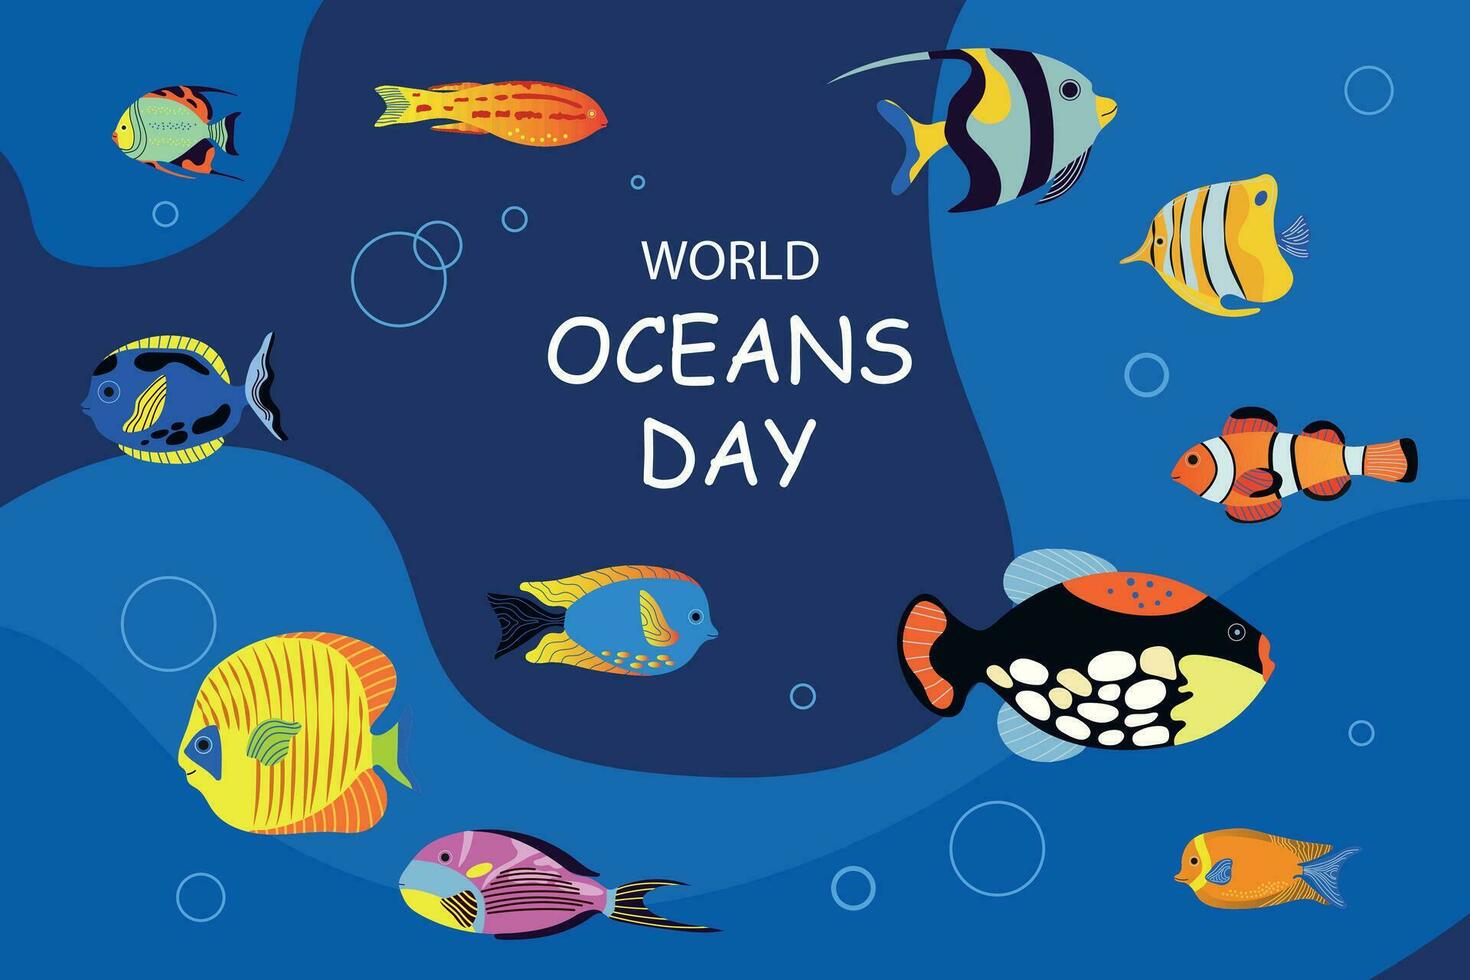 värld oceaner dag. juni 8. under vattnet hav bakgrund. olika hav fish.design, affisch, baner, mall. spara hav. vektor illustration.